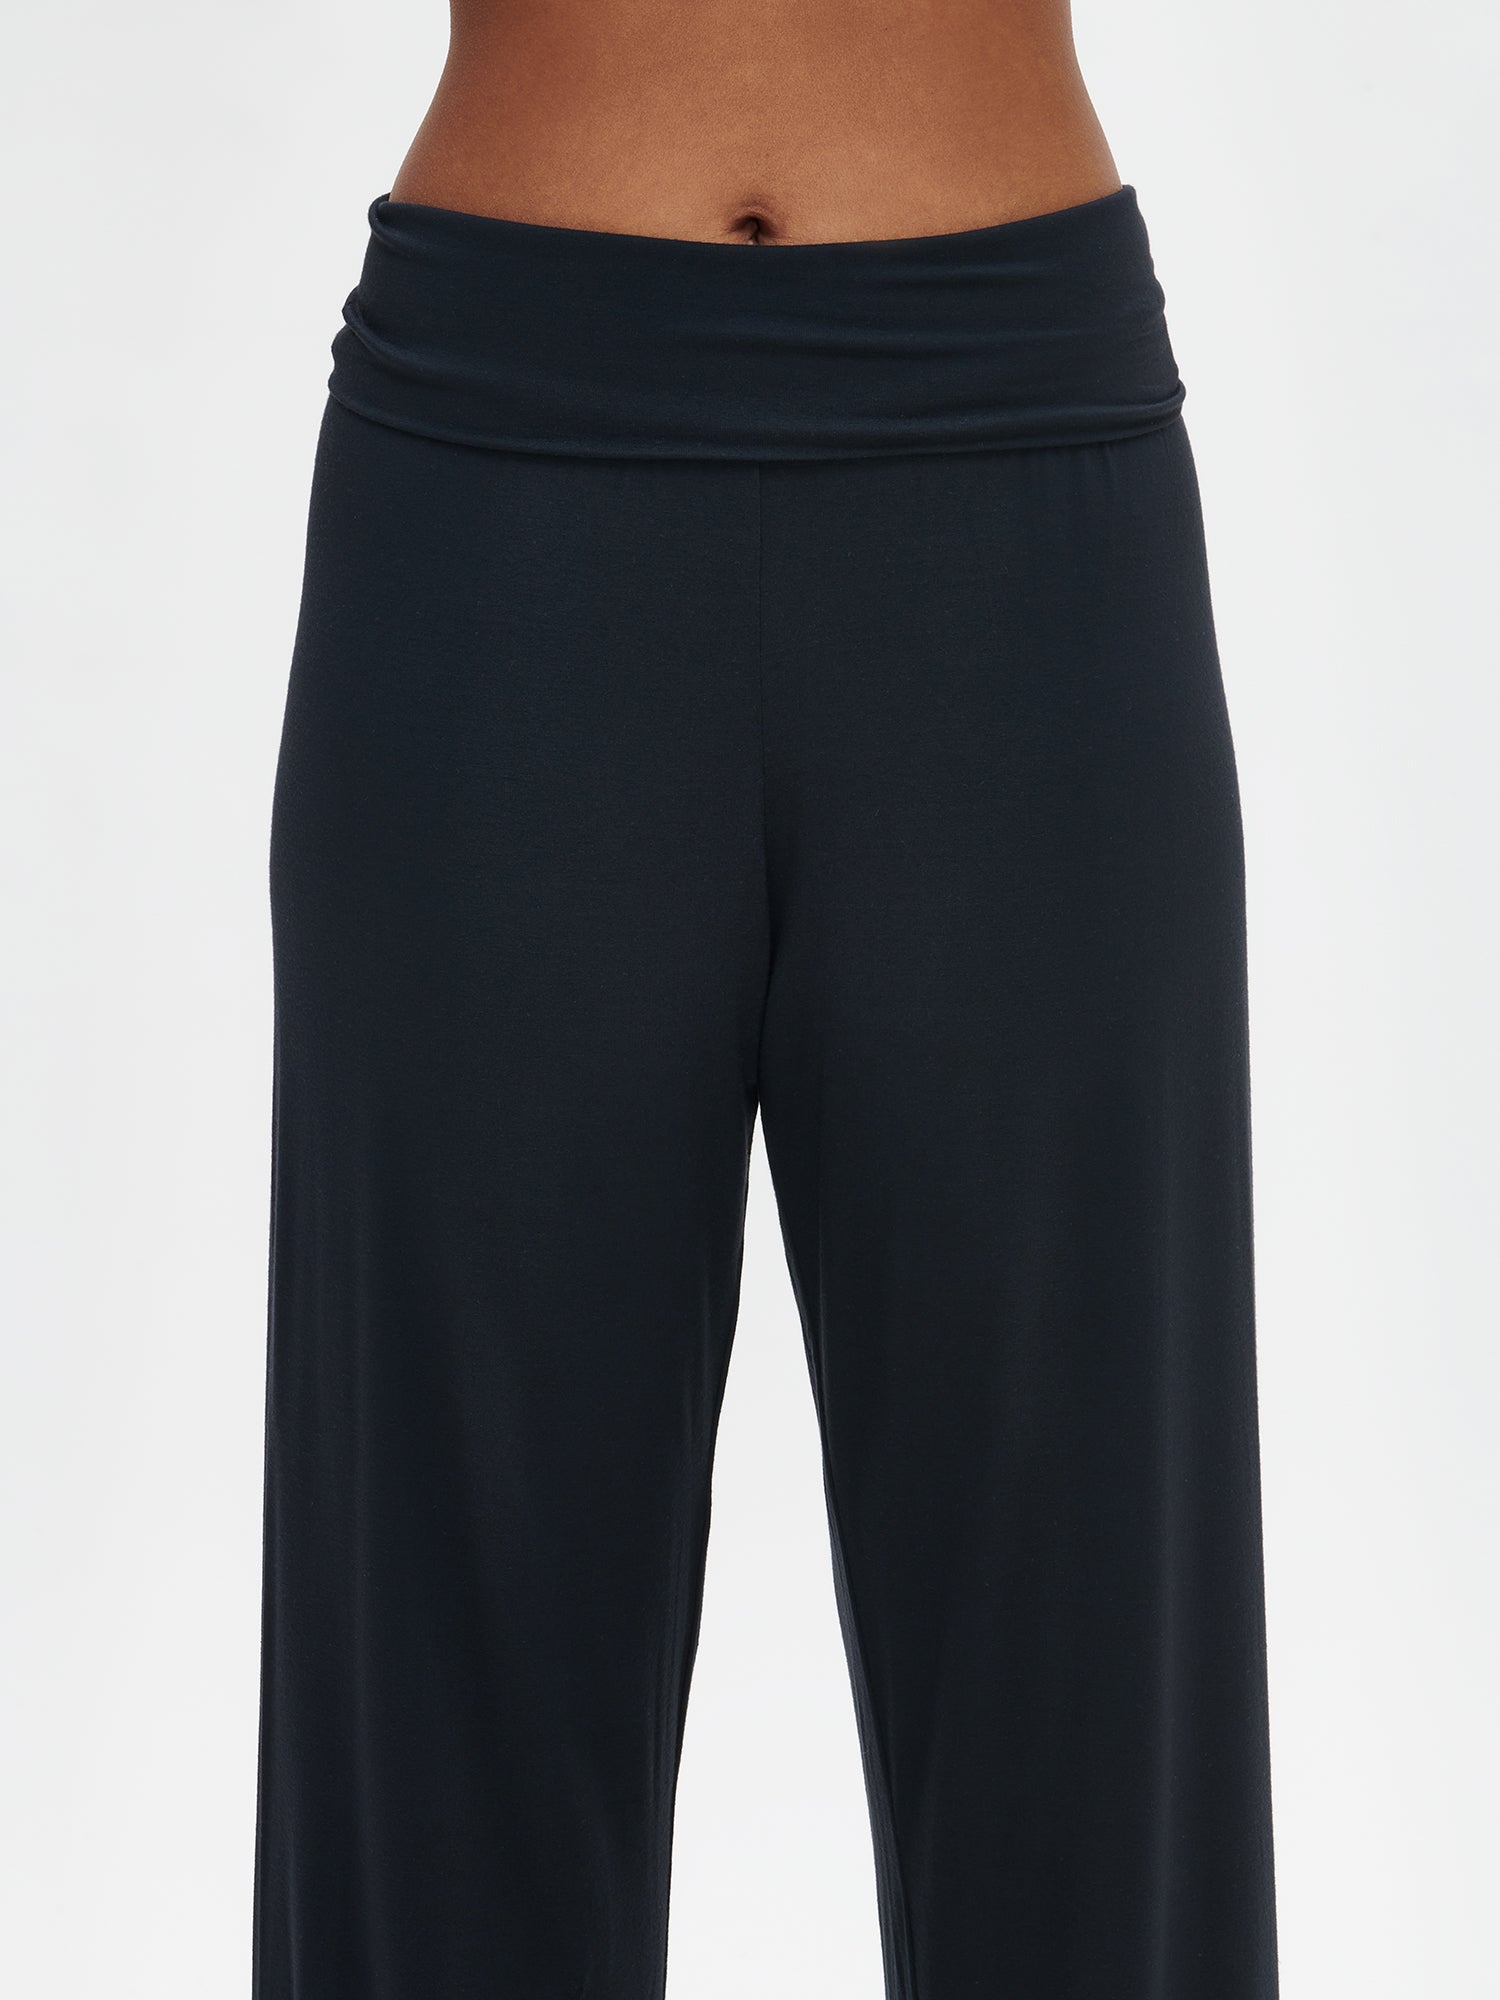 Nanson naisten ylellisen pehmeät mustat 7/8 mittaiset Pitsi-housut lahkeen mallin päällä lähikuvassa.